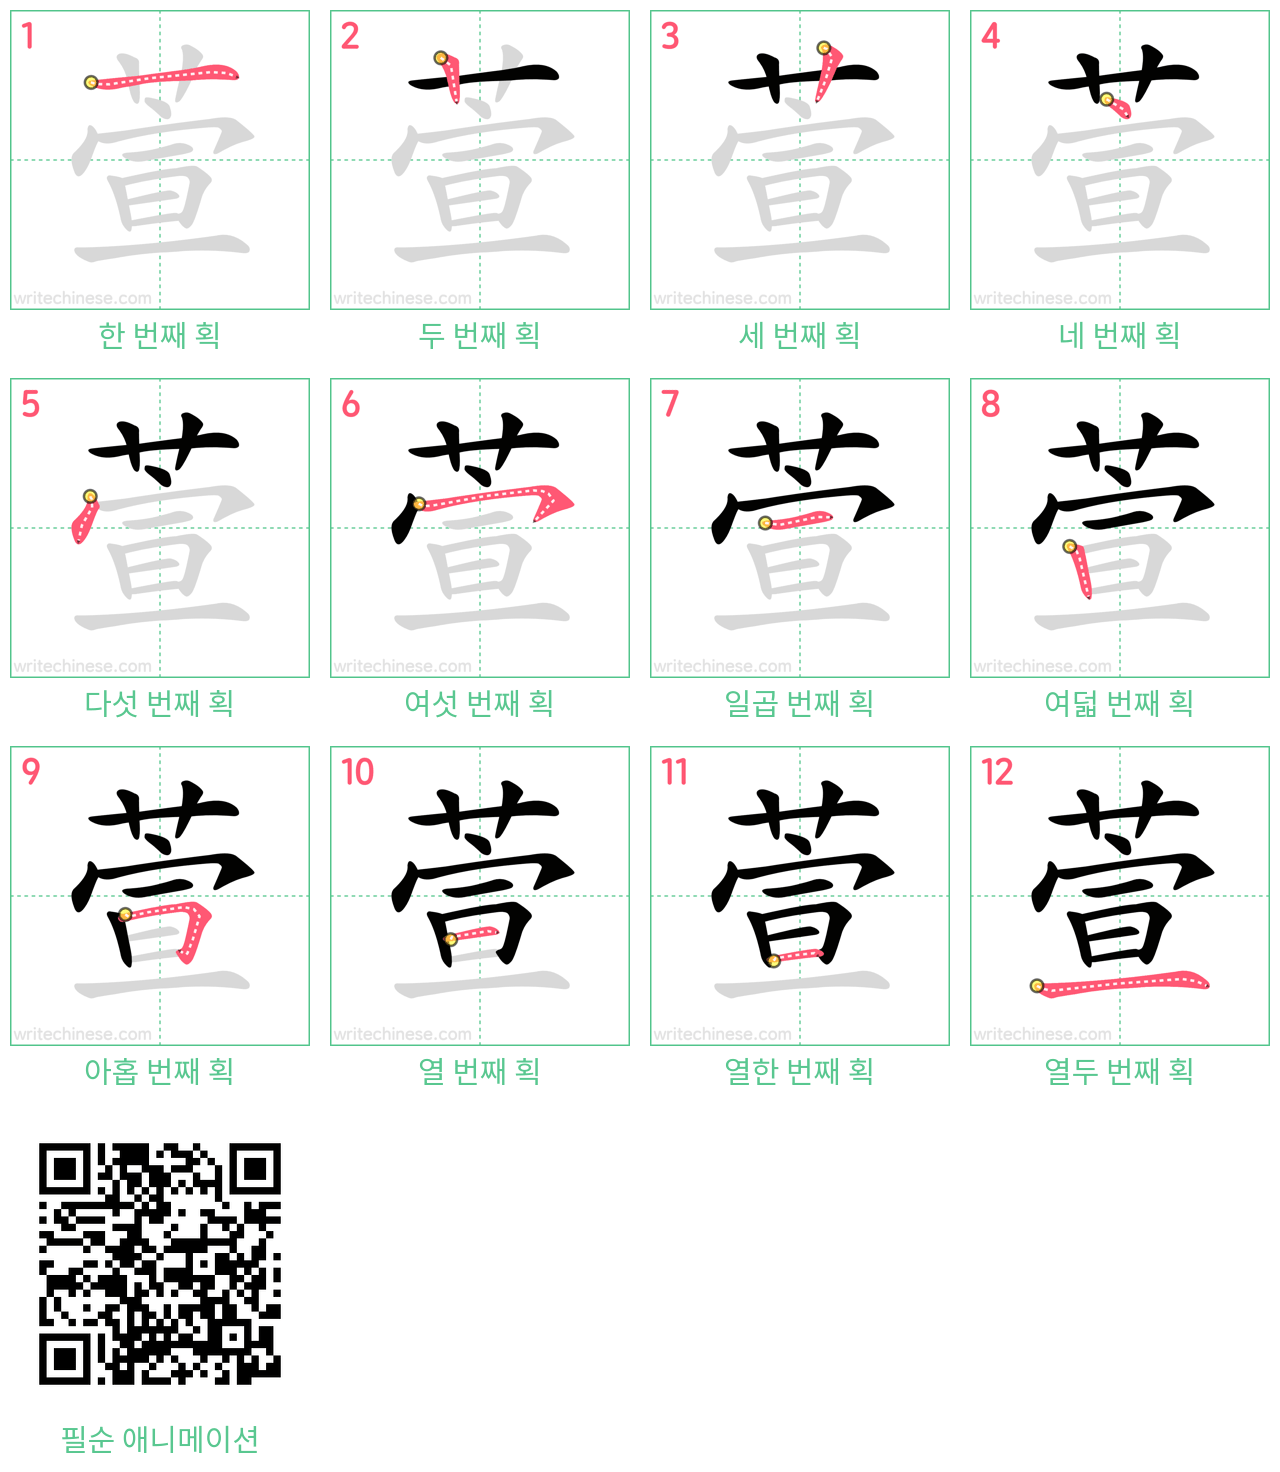 萱 step-by-step stroke order diagrams